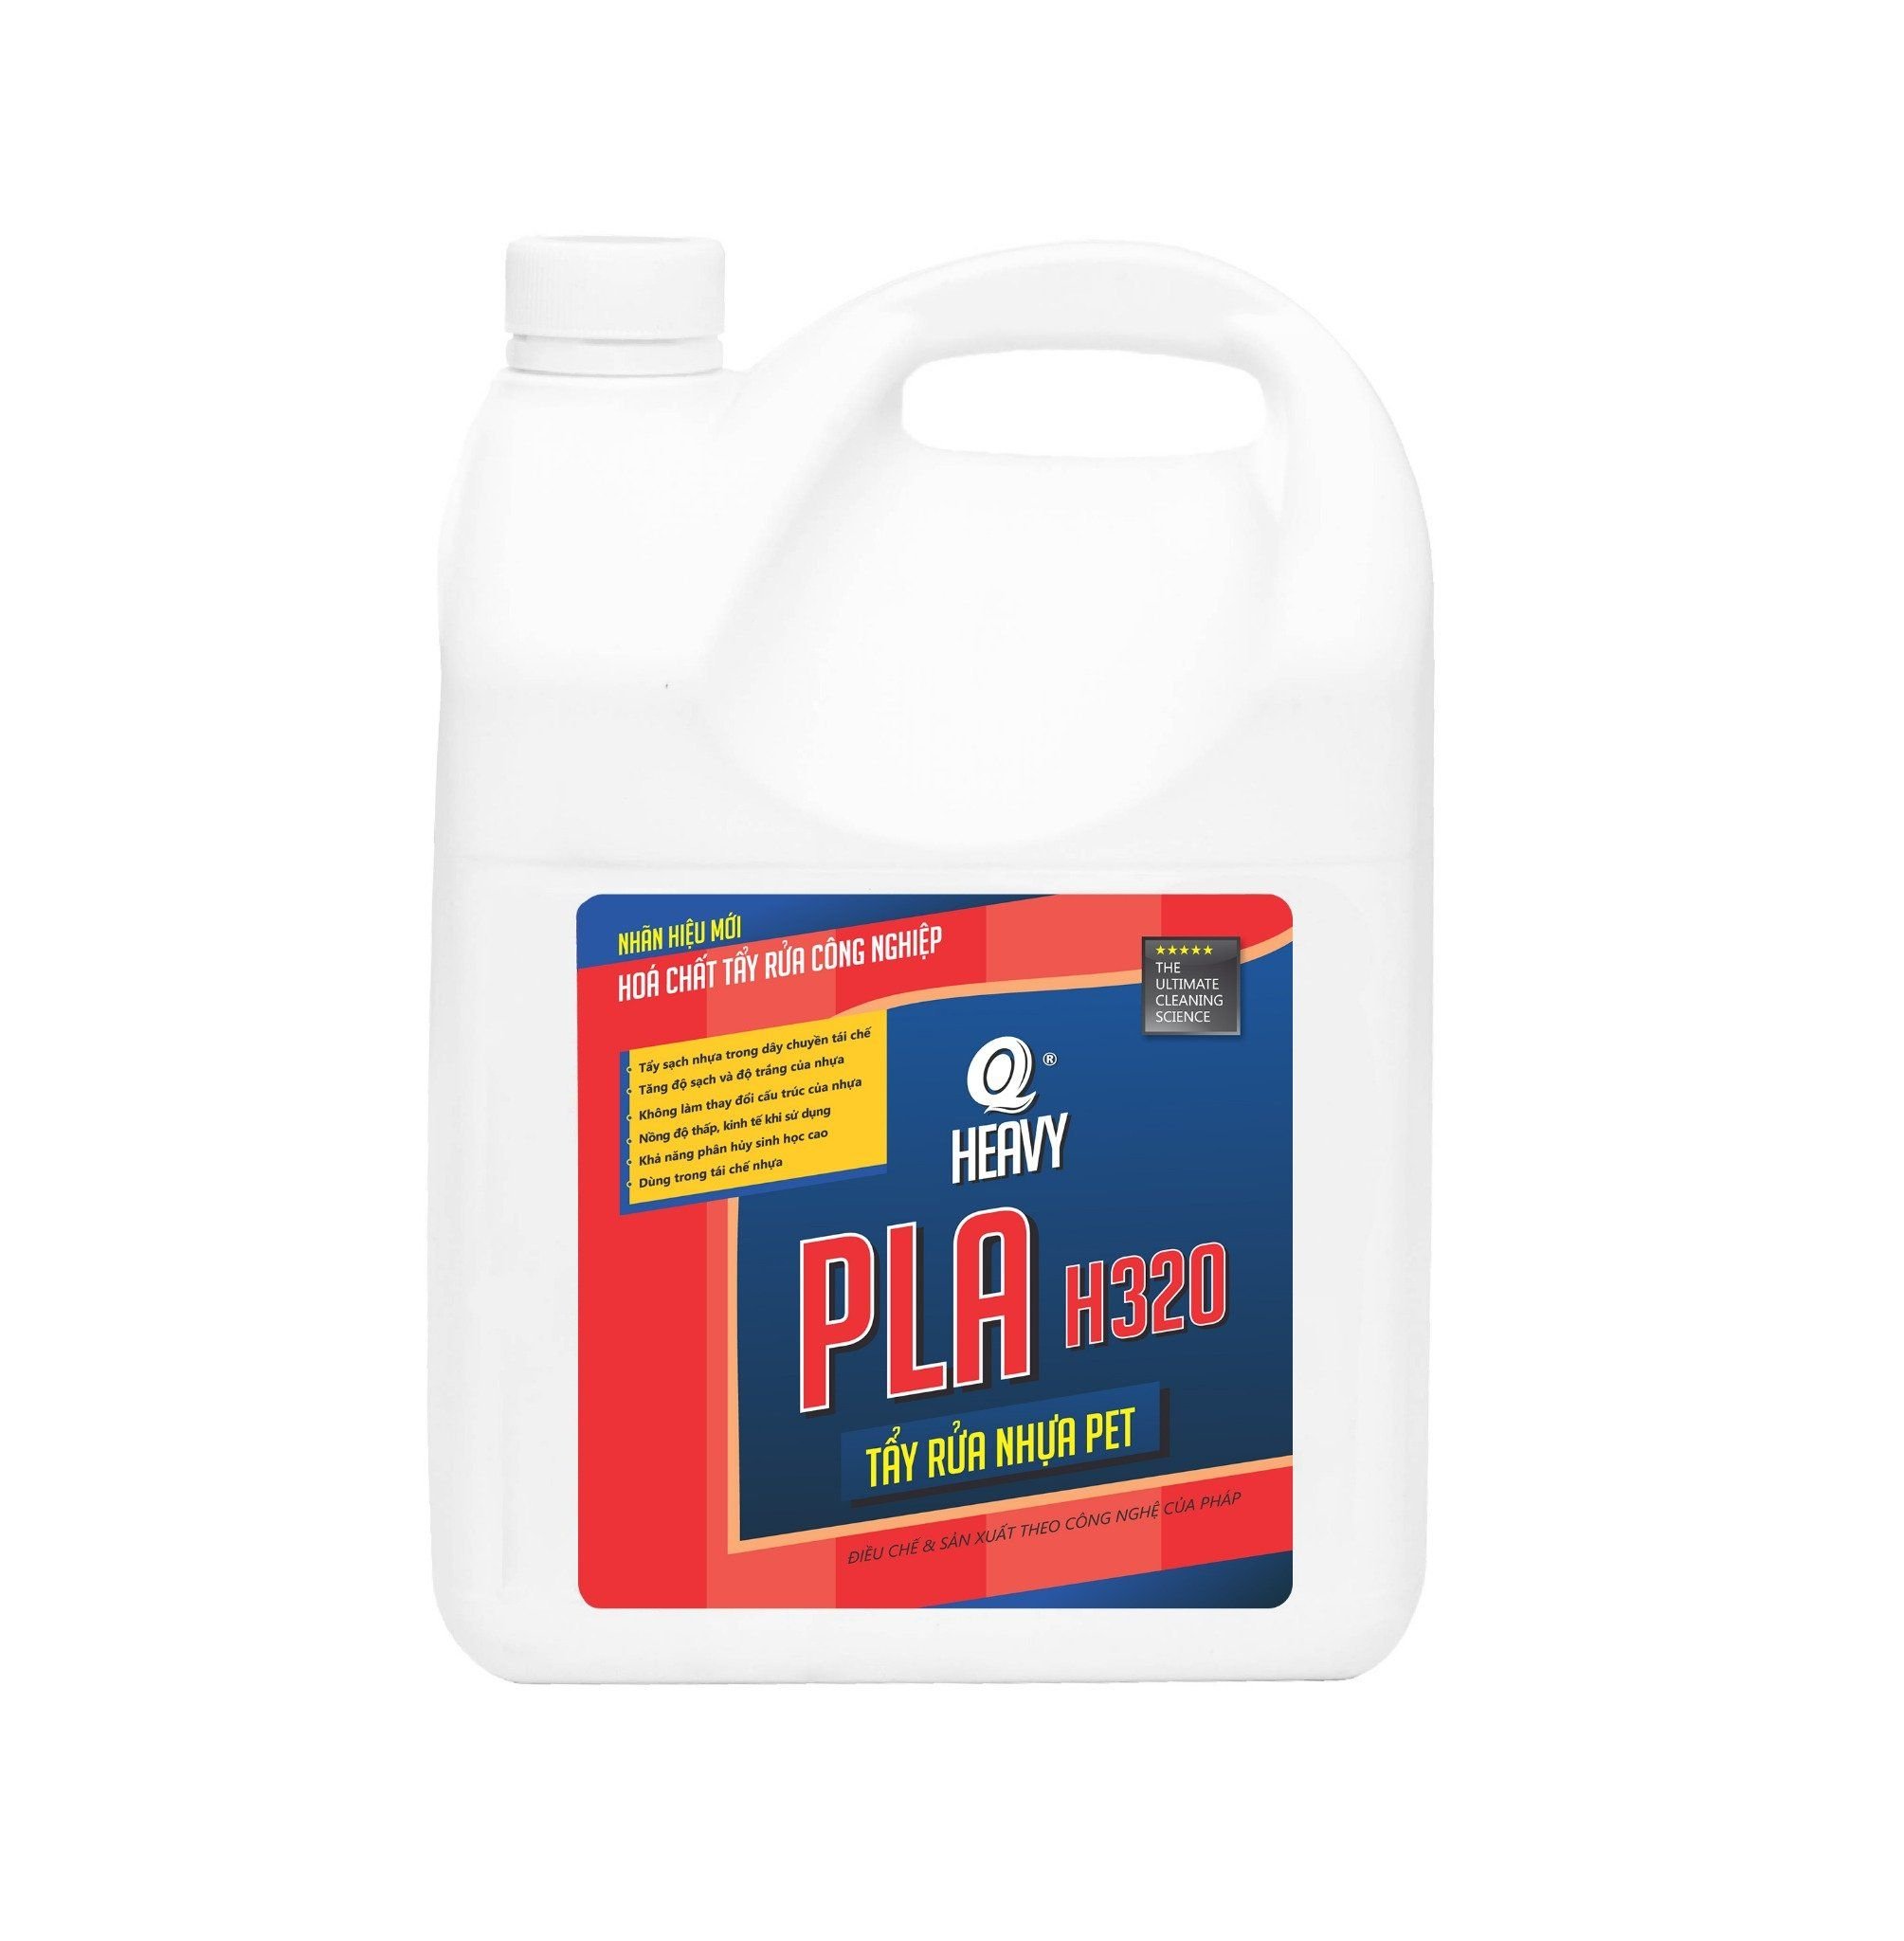  PLA H320 Chất tẩy rửa nhựa PET, PVC 